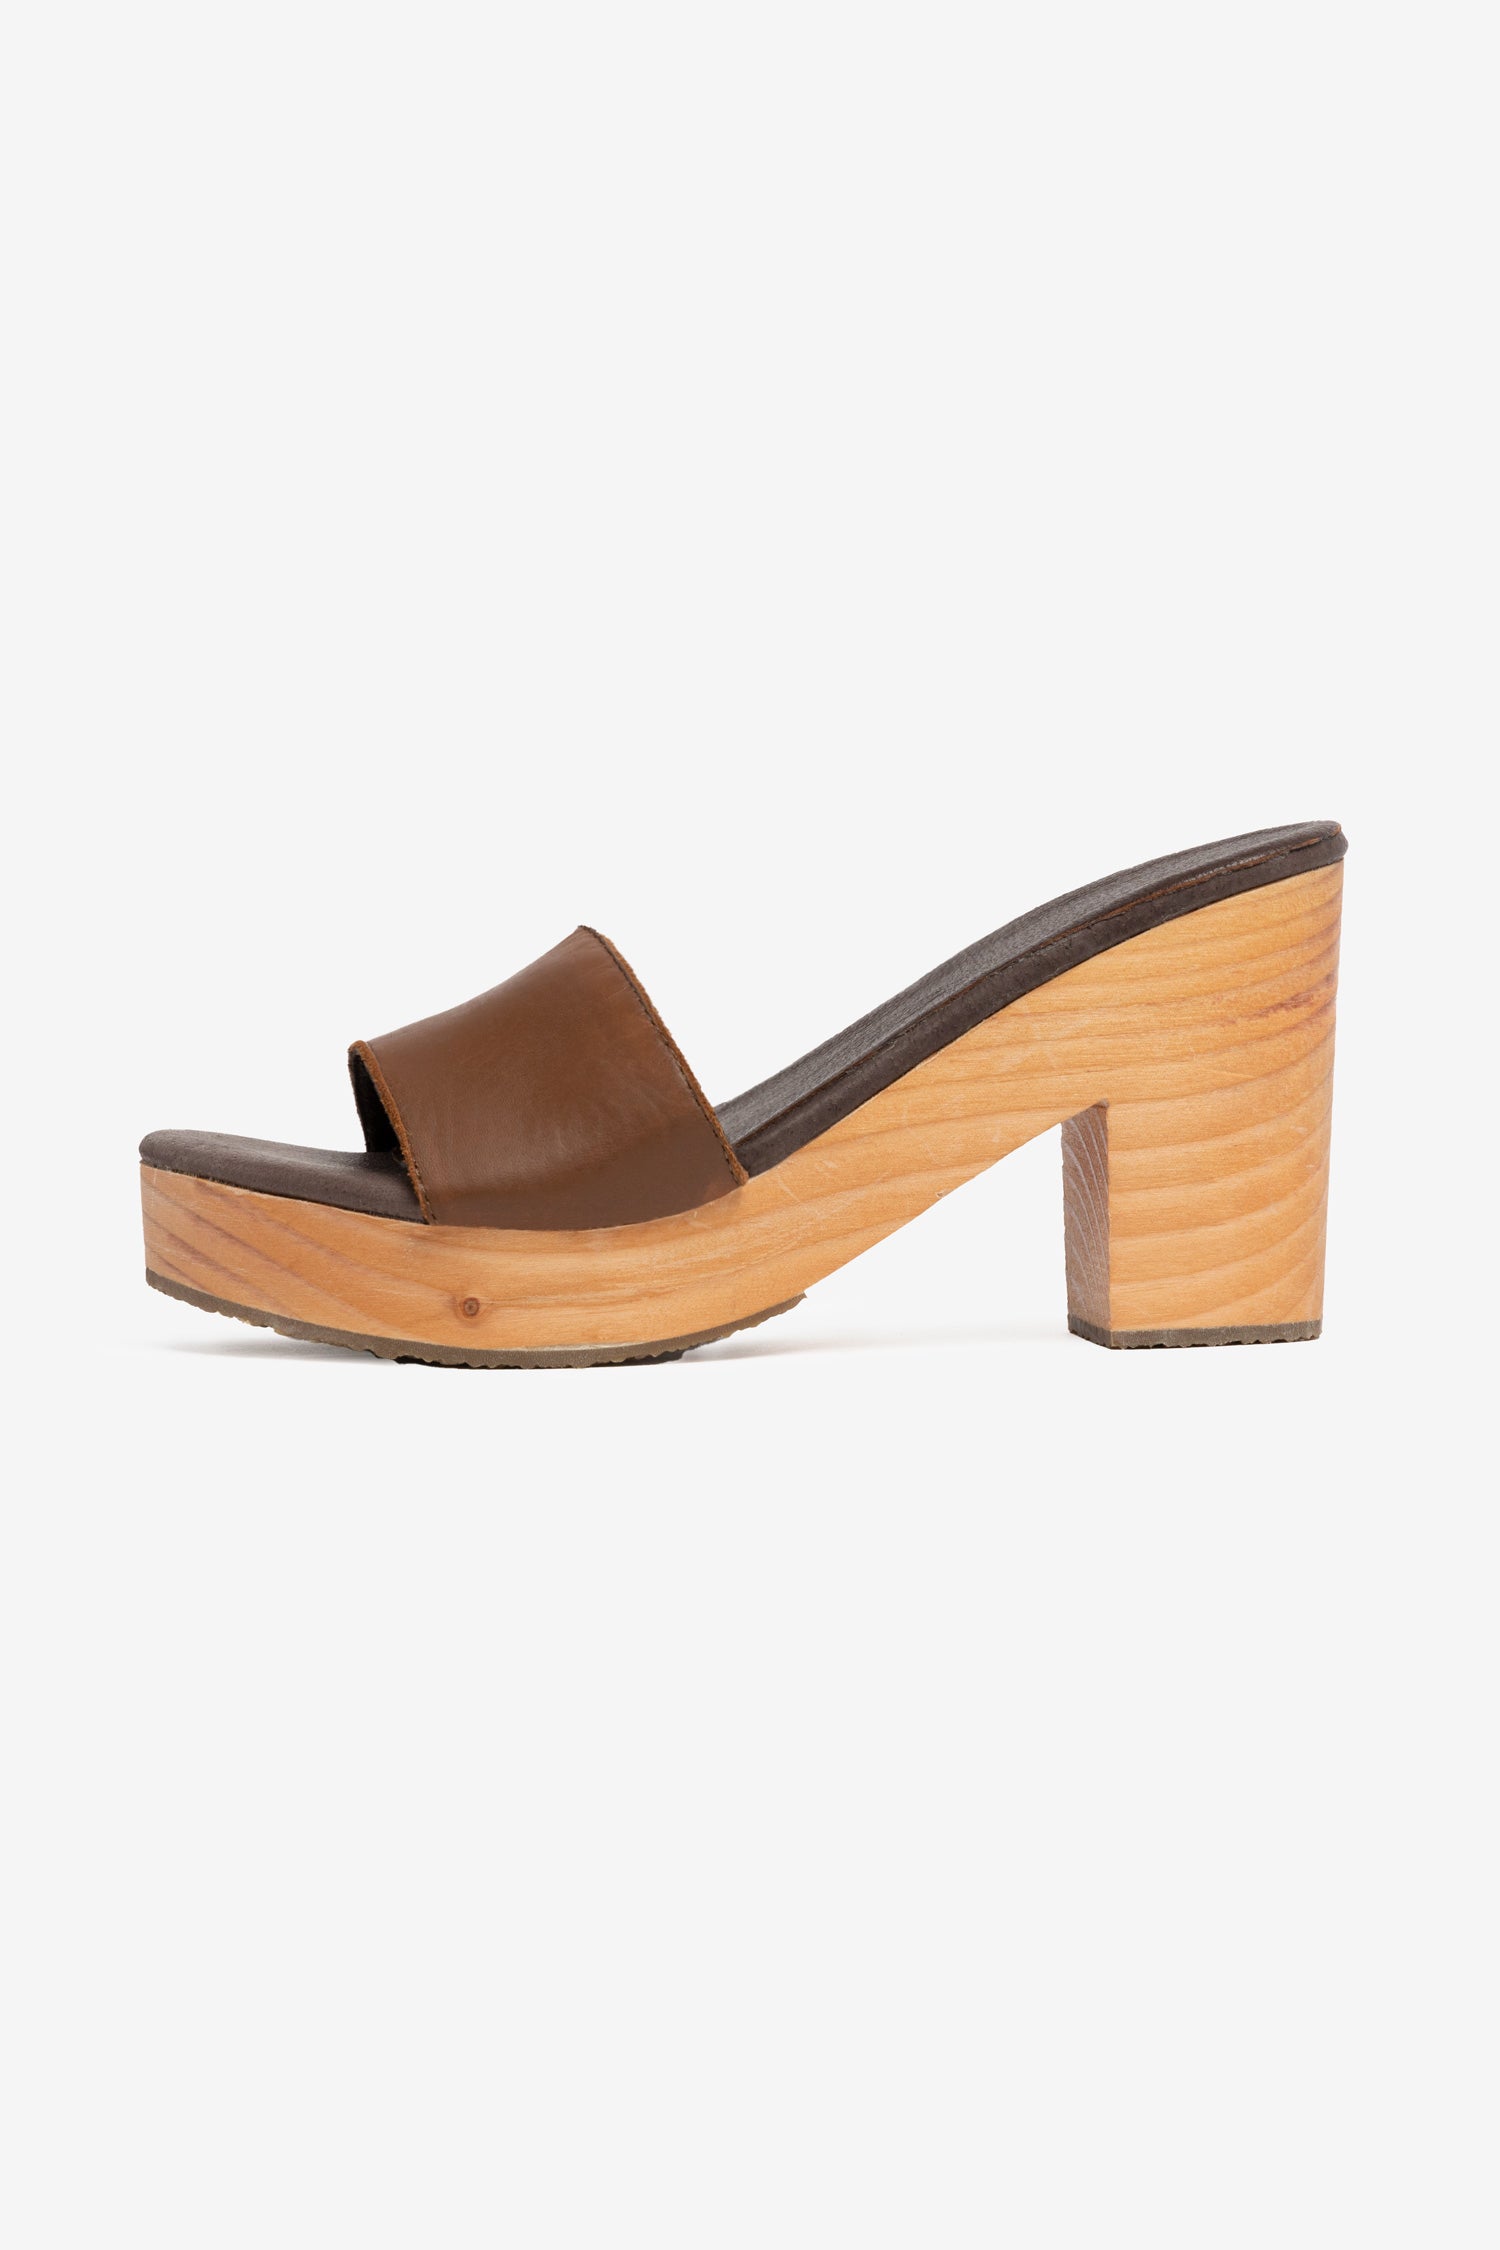 WOODSNDL02 - Wooden Mule Heel Sandal – Los Angeles Apparel